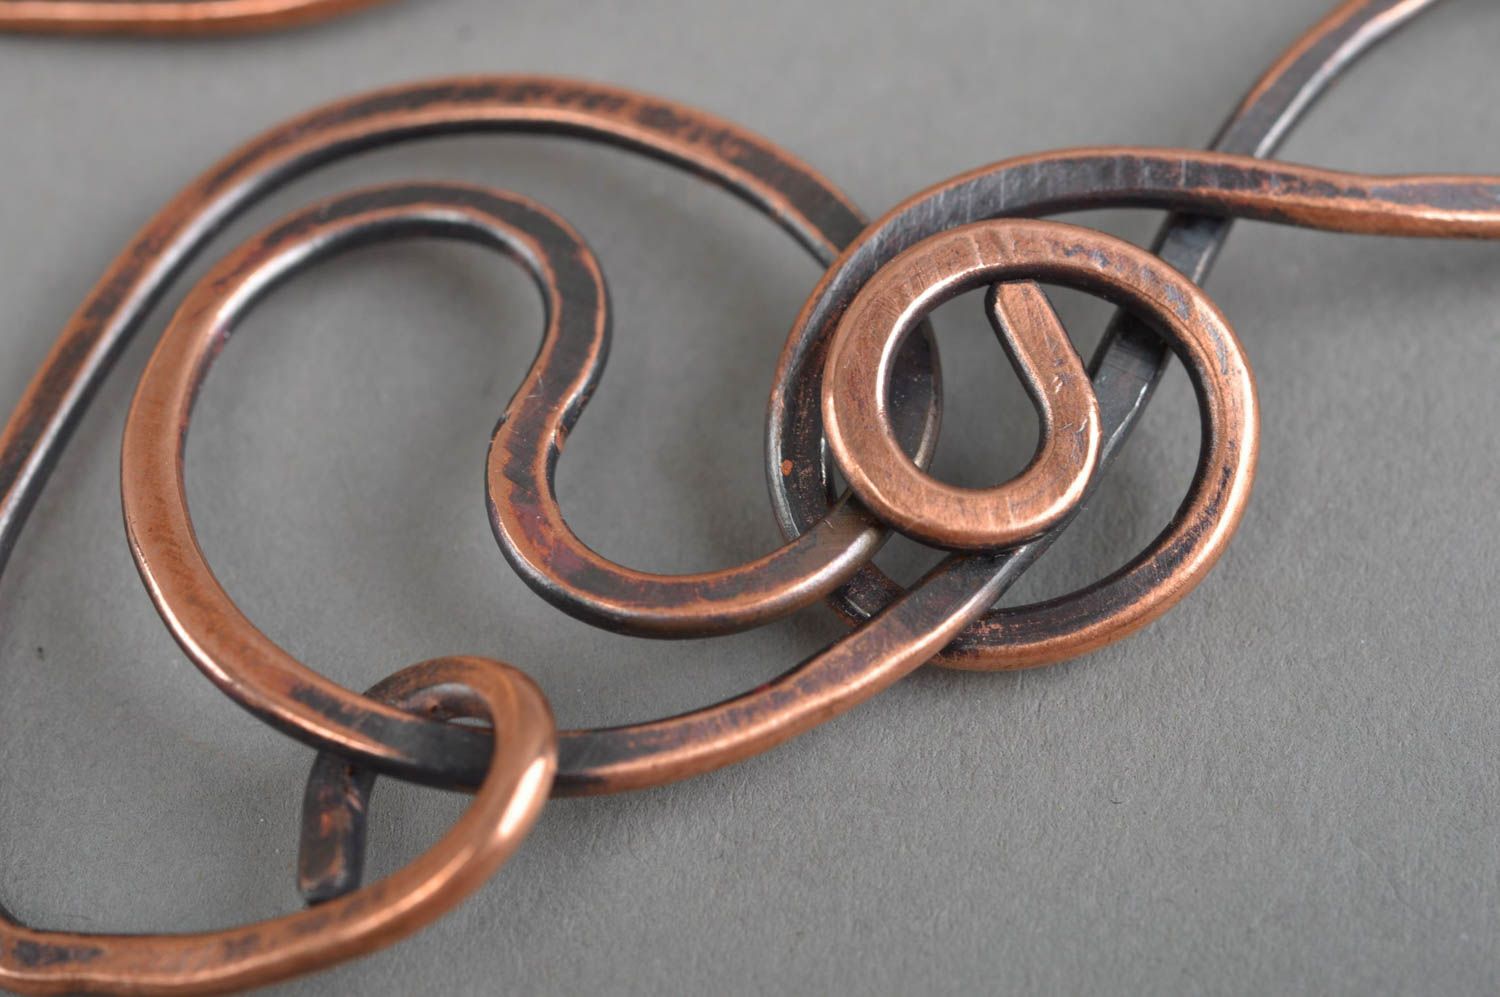 Unusual handmade metal earrings stylish copper earrings designer jewelry ideas photo 5